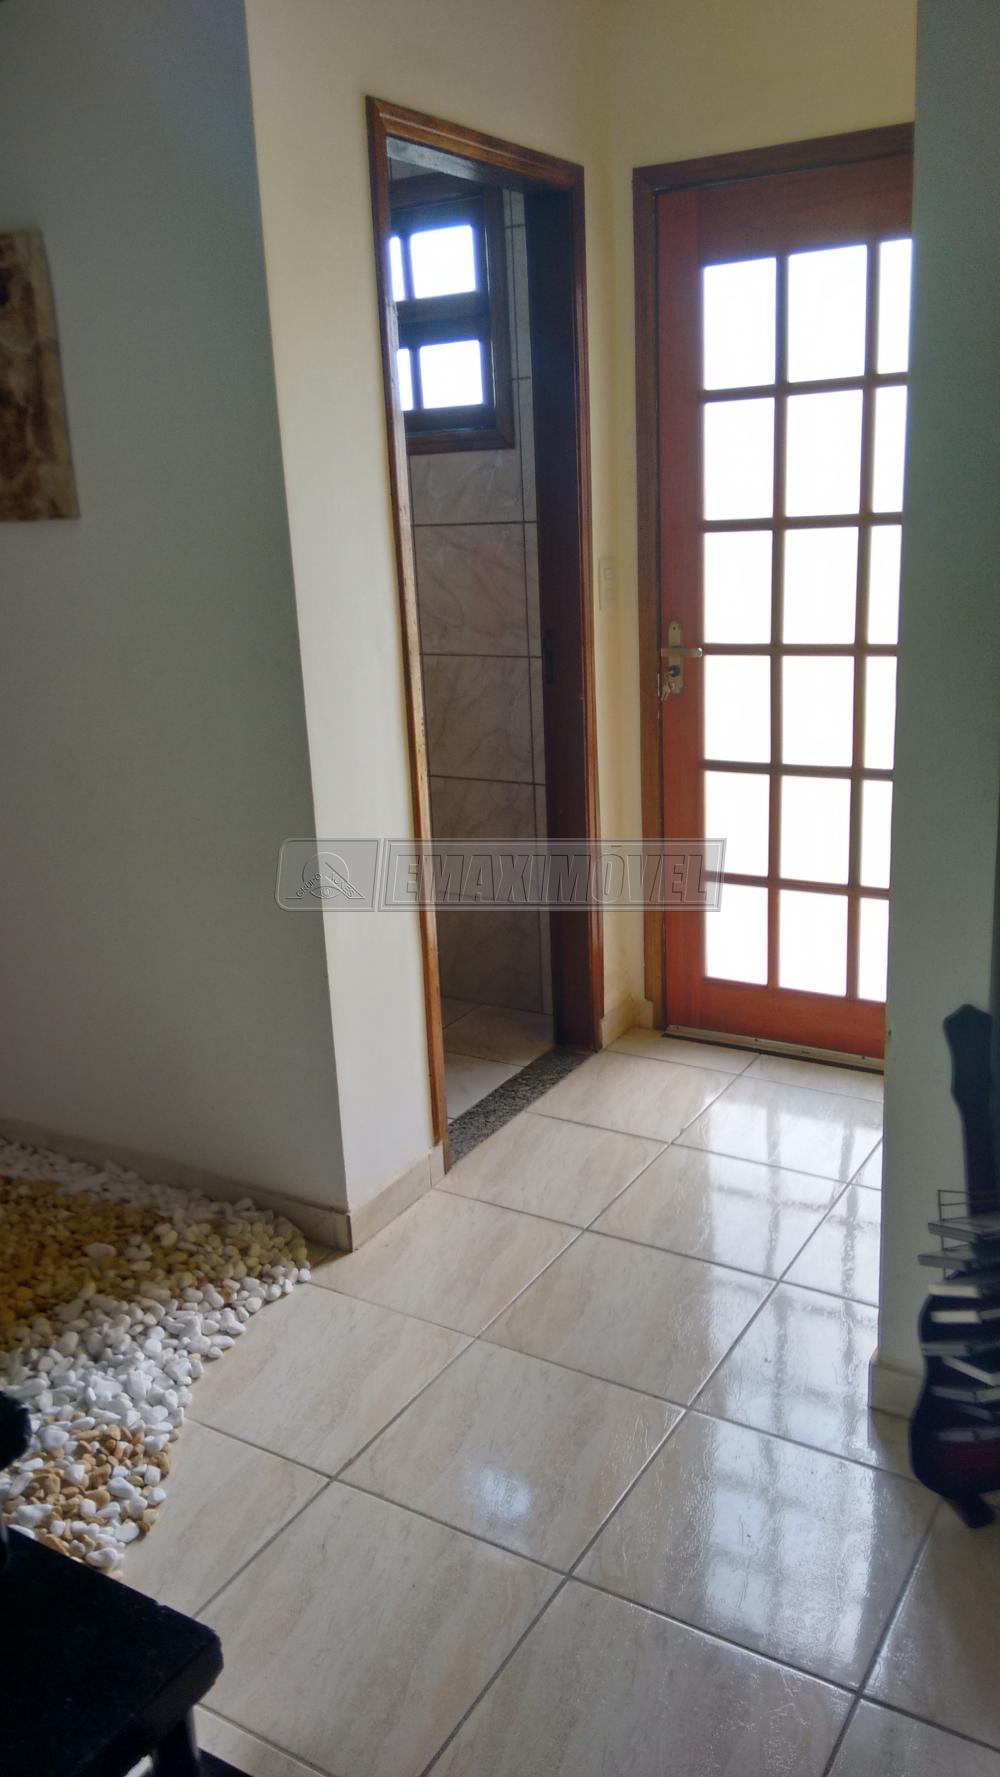 Comprar Casa / em Condomínios em Sorocaba R$ 280.000,00 - Foto 3